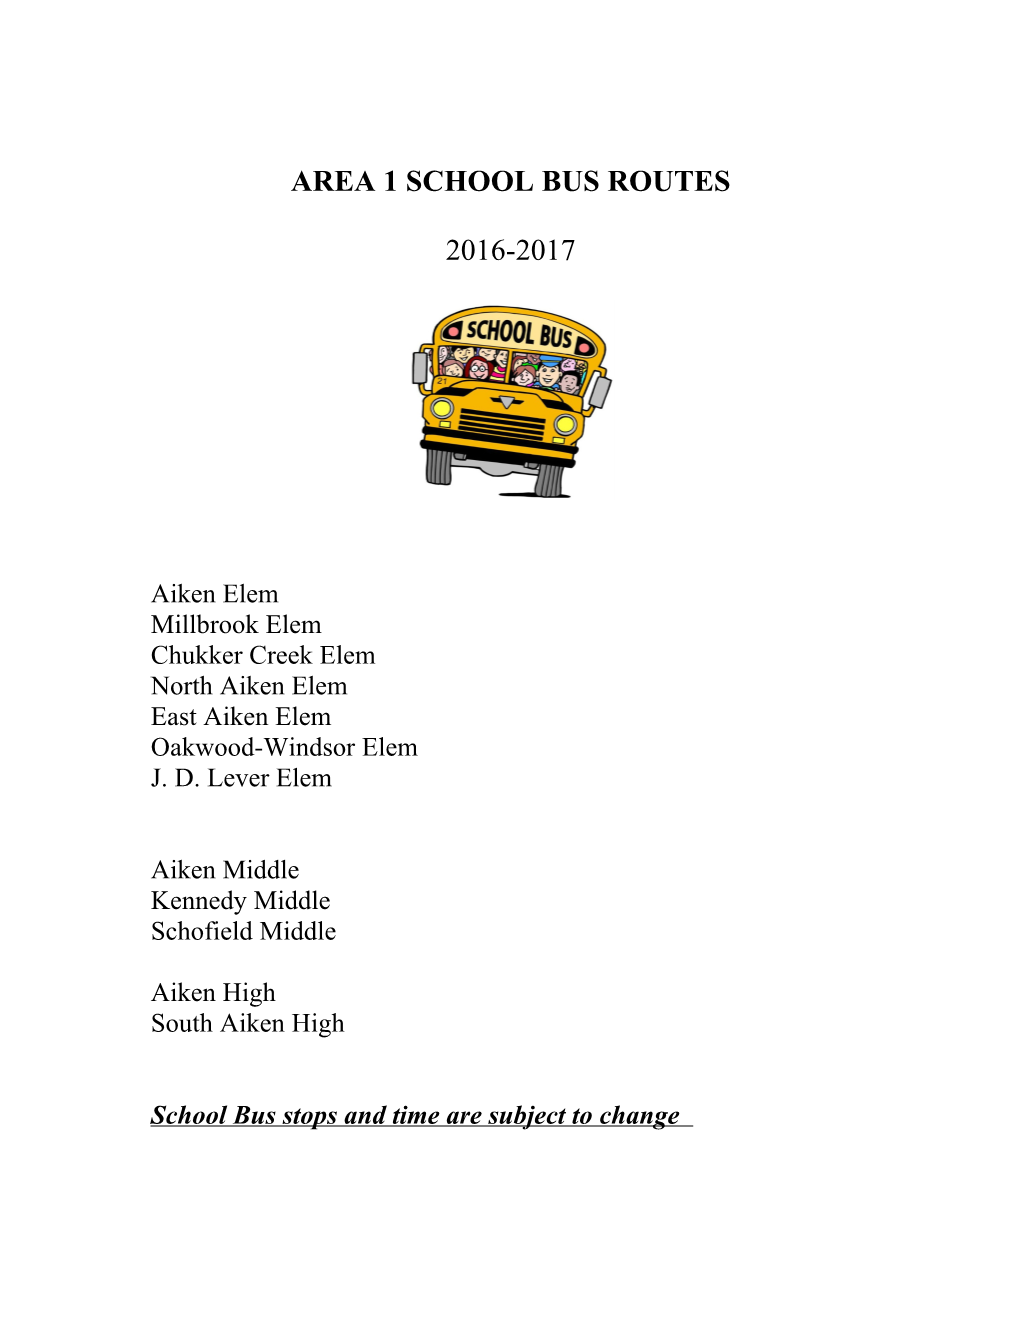 Area 1 School Bus Routes